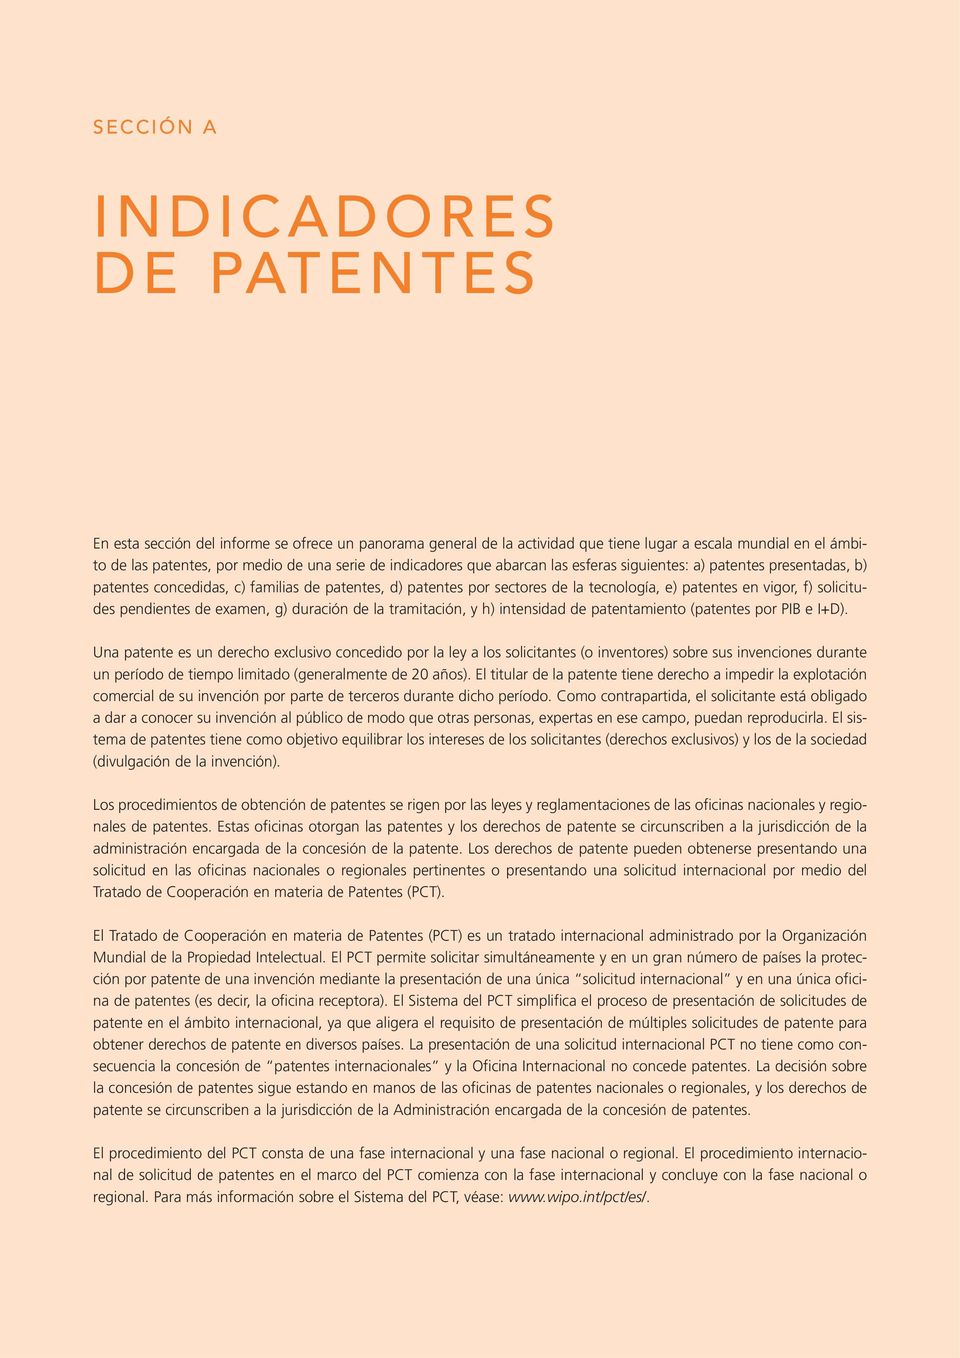 solicitudes pendientes de examen, g) duración de la tramitación, y h) intensidad de patentamiento (patentes por PIB e I+D).